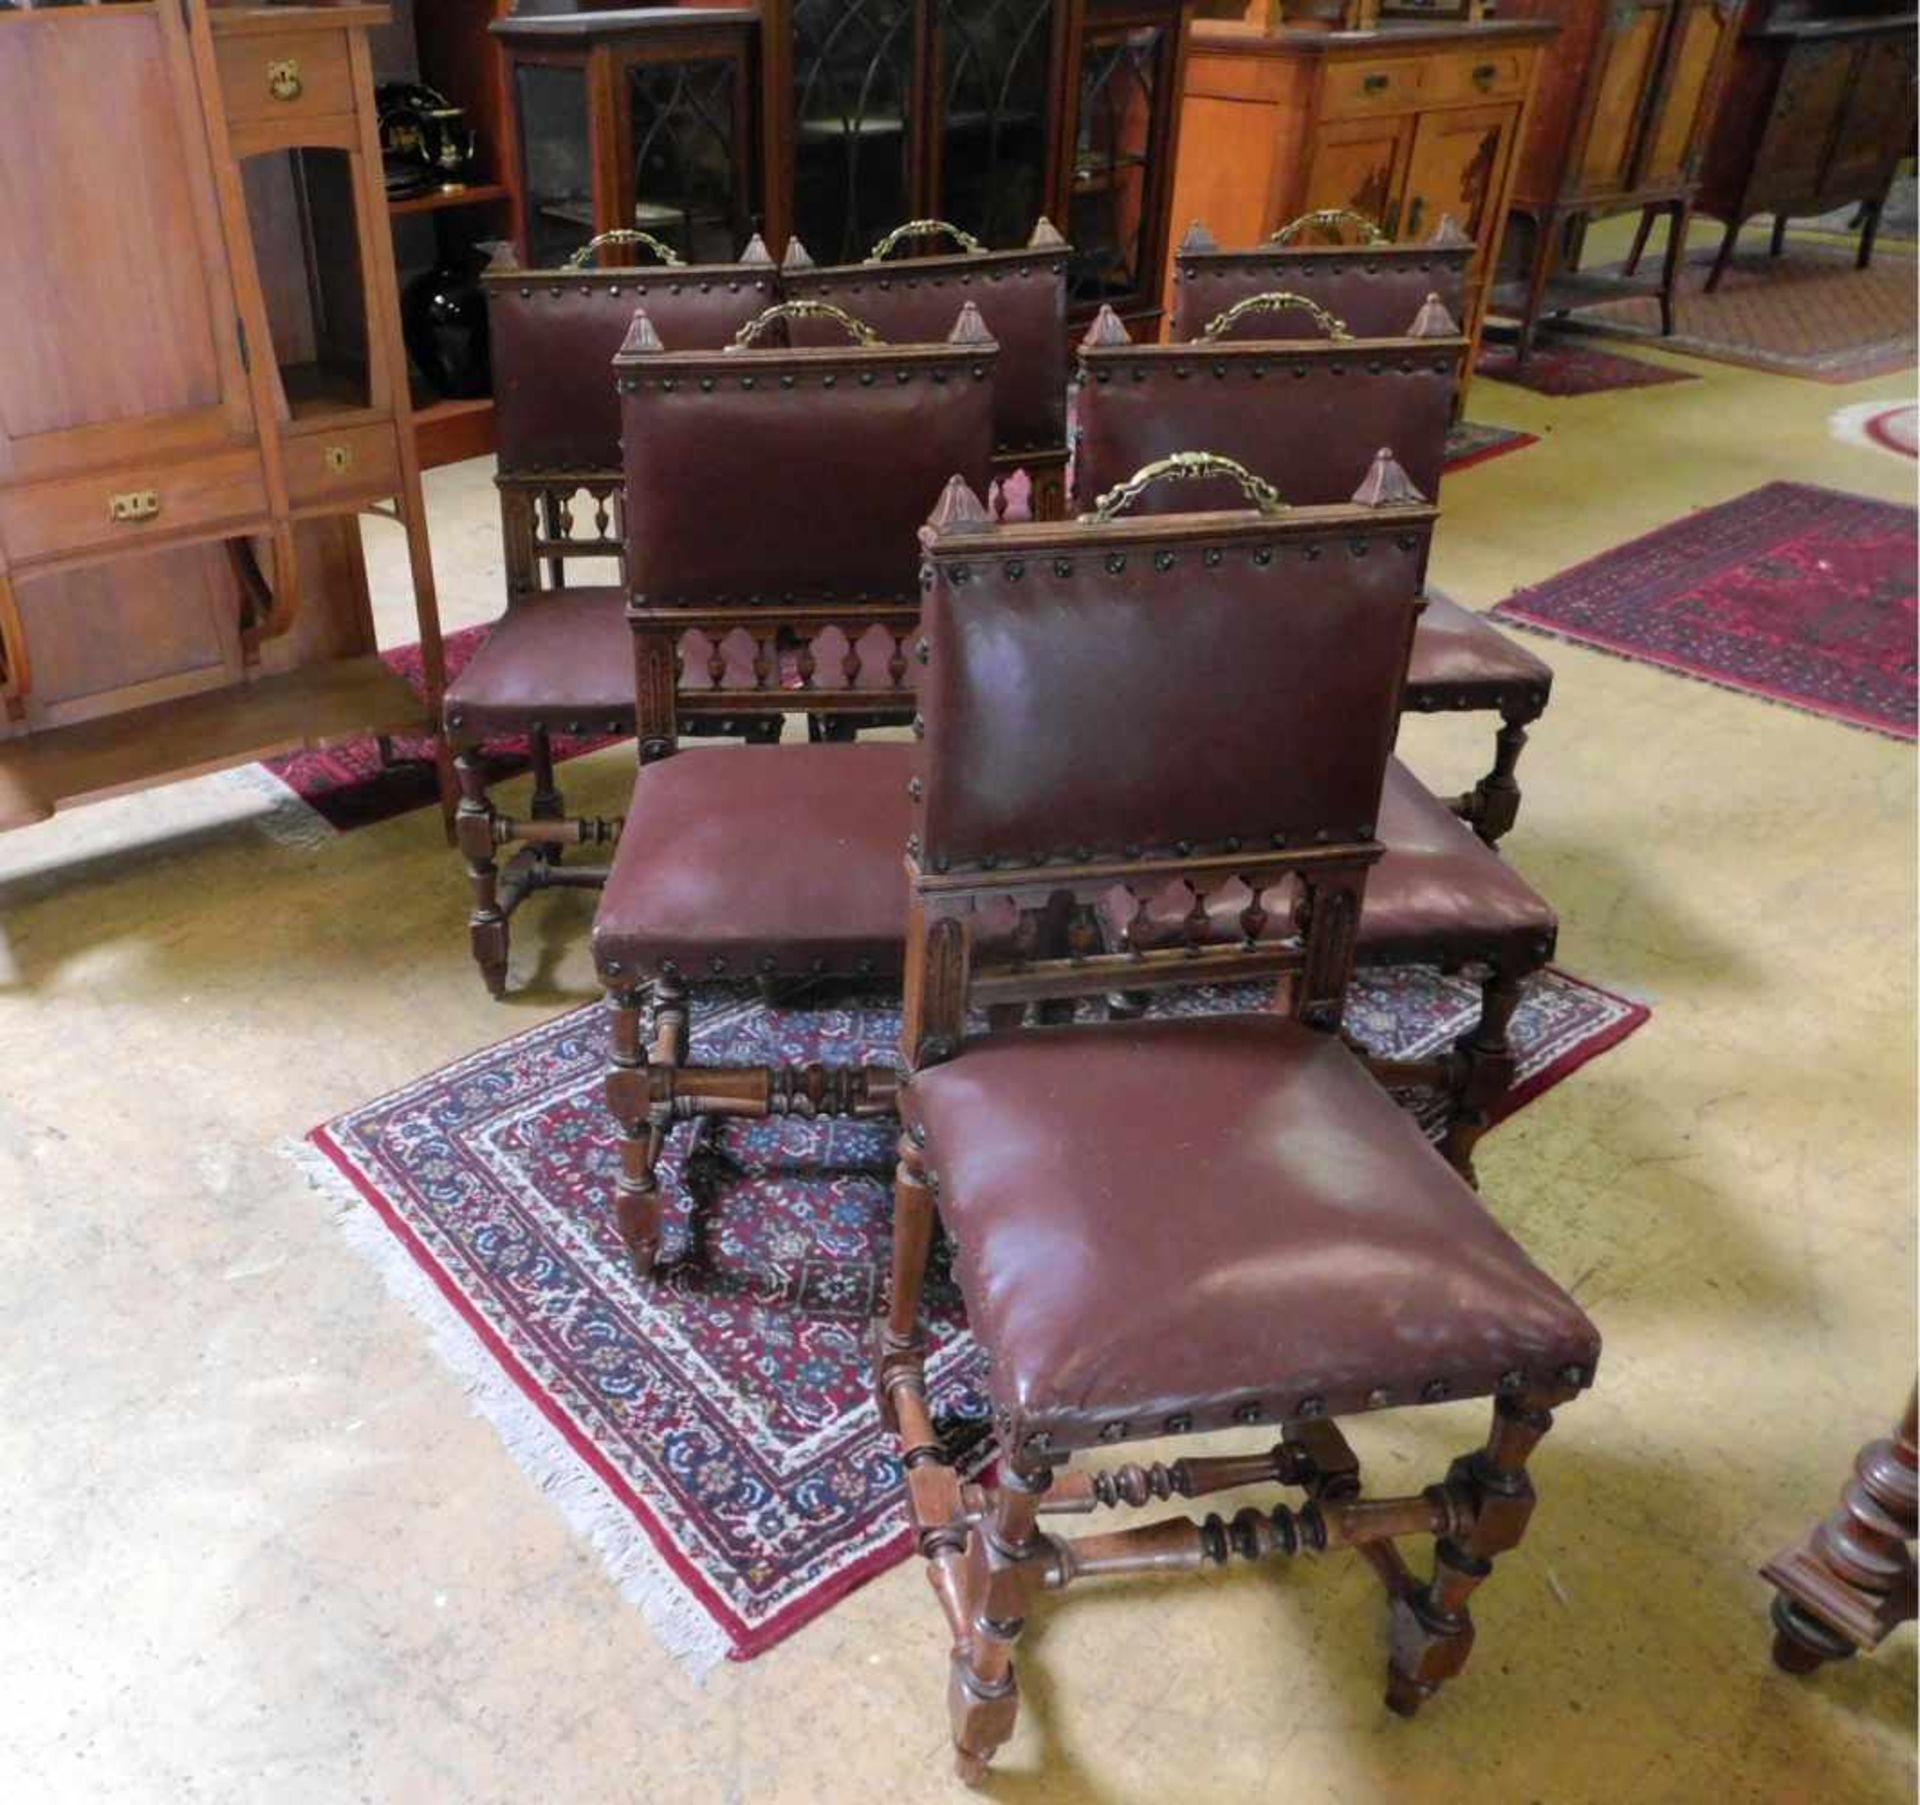 6 Stühle, Frankreich, Eichenholz und Sitzfläche mit rotem Lederbezug, Historismus, um 1890 - Image 2 of 3